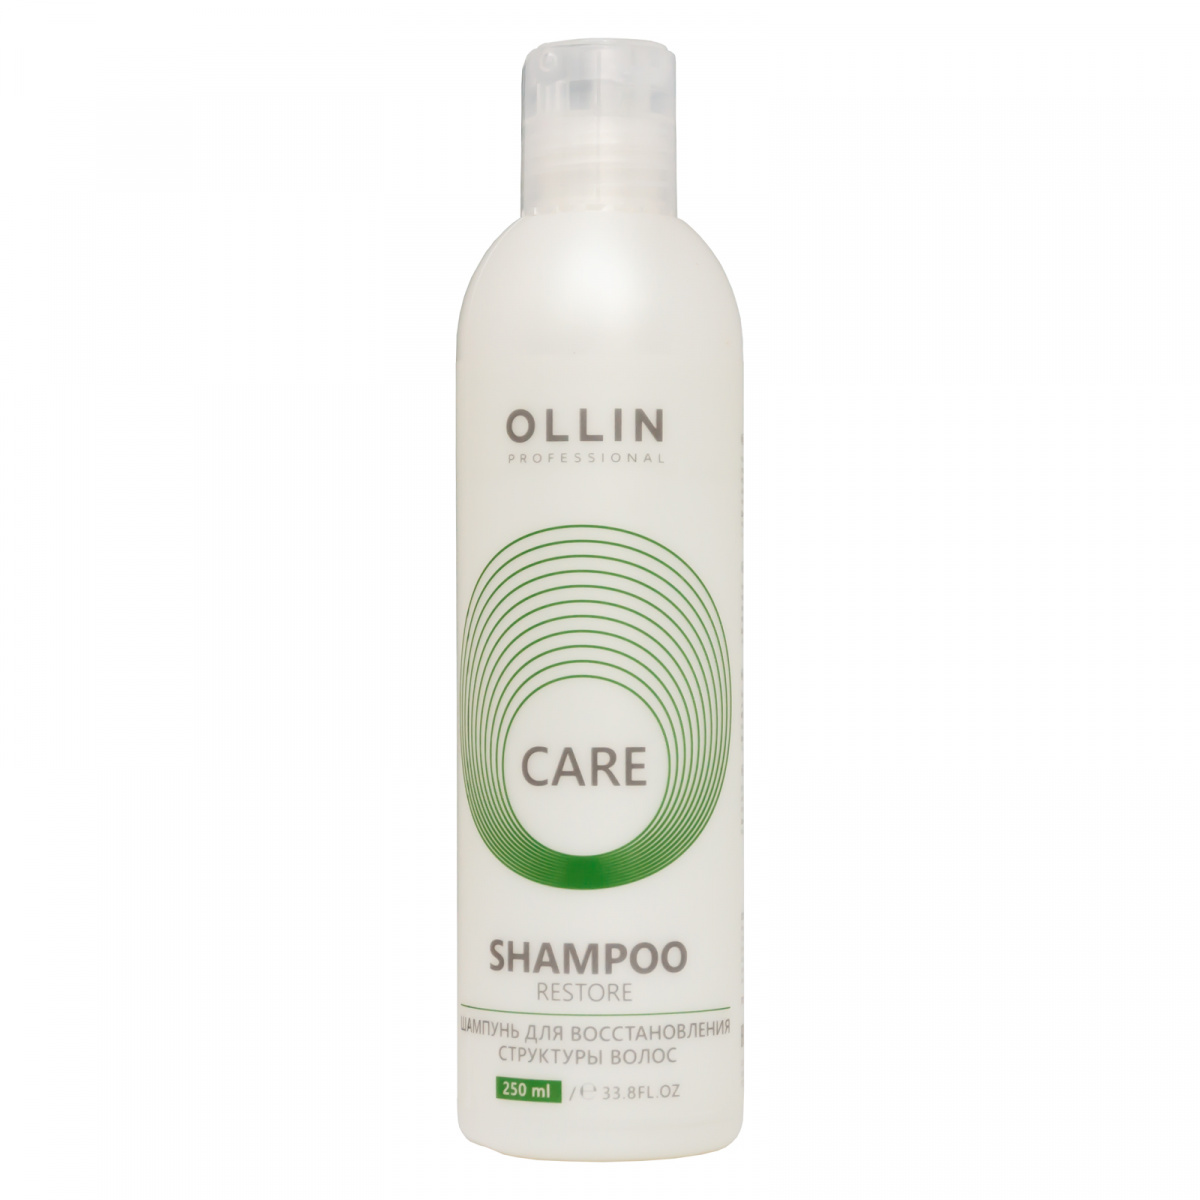 Ollin Professional Care Restore Shampoo - Шампунь для восстановления структуры волос 250 мл Ollin Professional (Россия) купить по цене 410 руб.